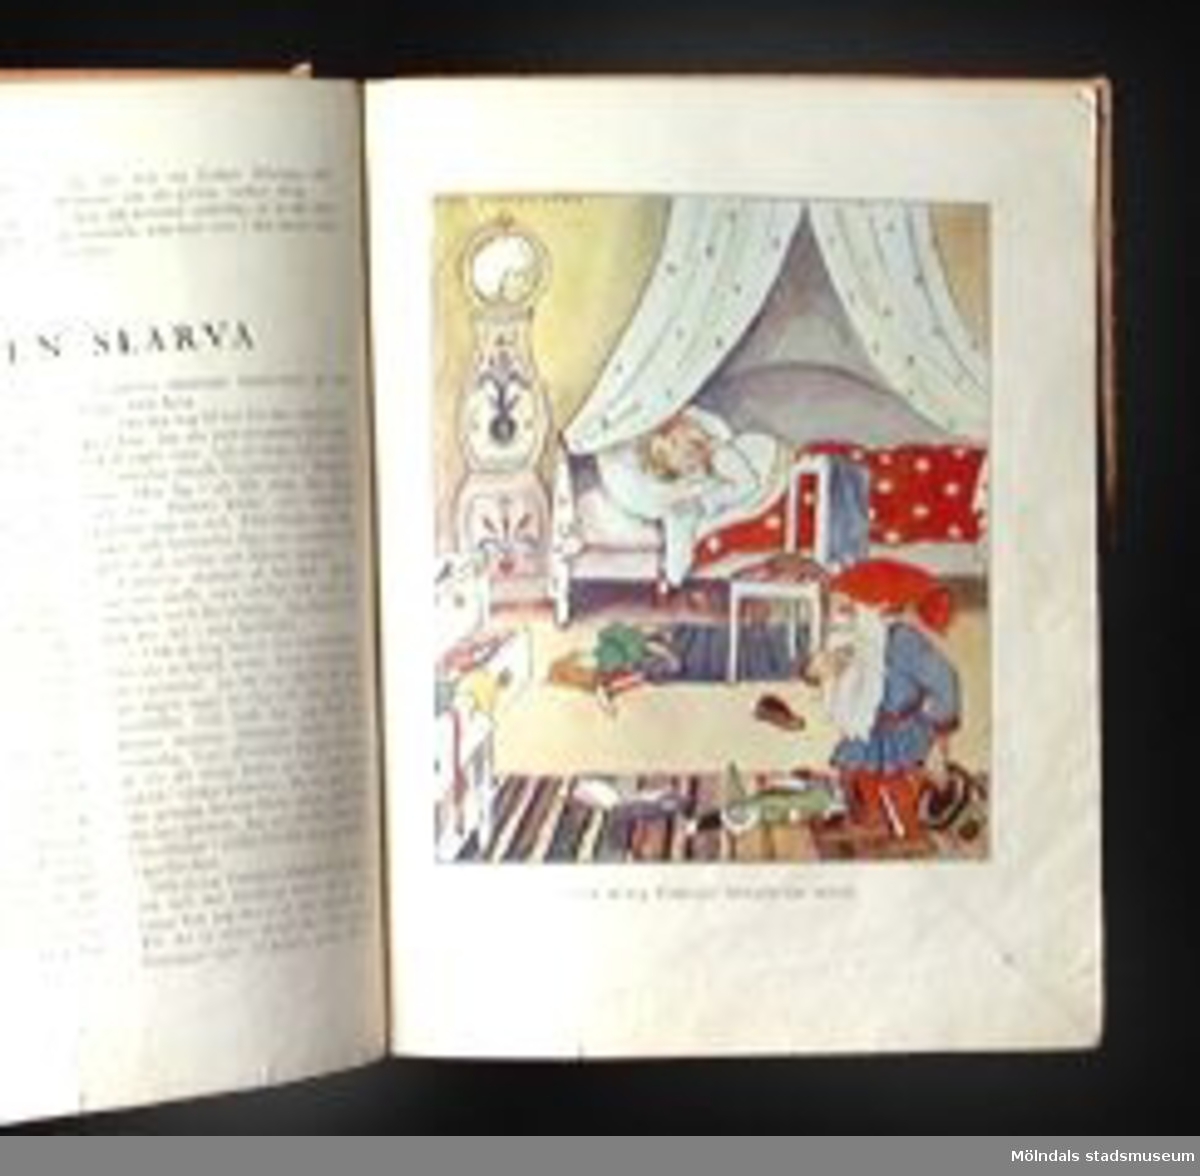 Tomtesagor och andra sagor av Gerda Ghobé, illustrerade av Maja Synnergren, Gbg, 1934. 15 sidor. Innehåller sagorna: "Tomten Lilleman", "Fröken Blåsippa", "En liten slarva", "Lyckosvalan", "De förtrollade glasögonen" och "Lille Nisses äventyr". Häftet har ett omslag i beige papper, med en etikett med sagornas namn på. Märkt i bläck på kanten av utsidan med: Lille Nisses äventyr.